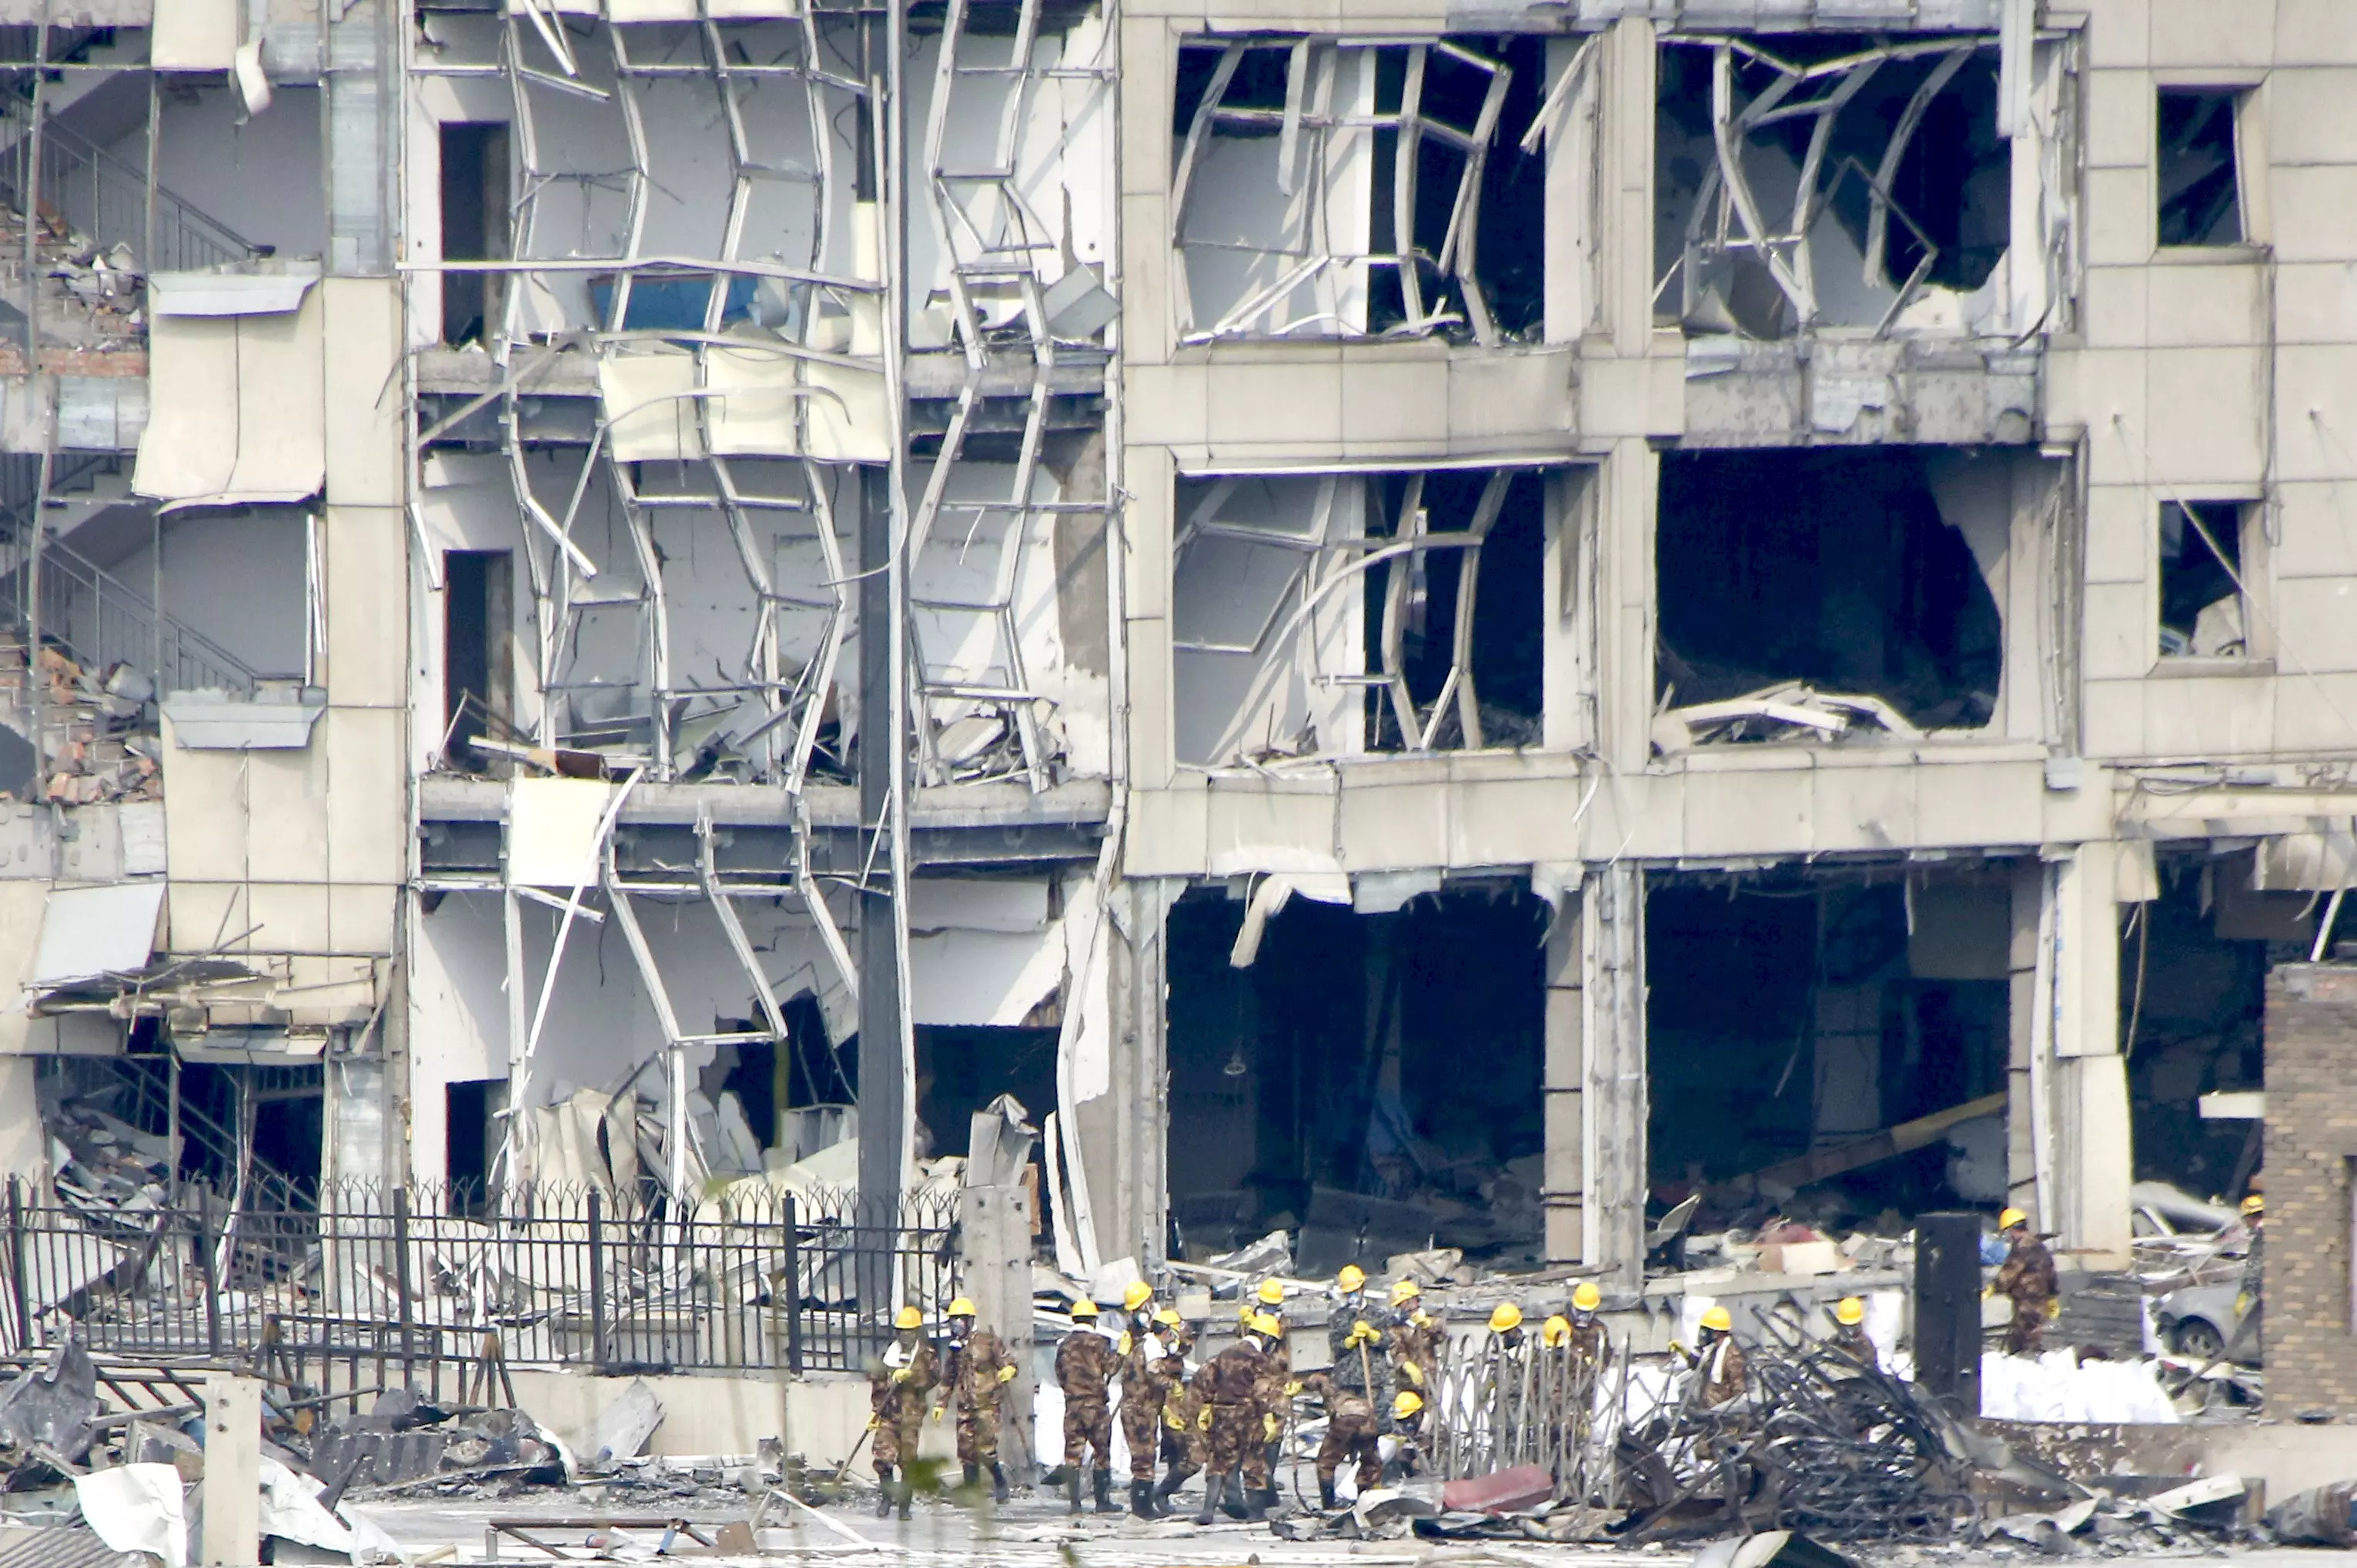 תמונות מאזור שבו אירעו הפיצוצים במחסן בטיאנג'ין שבסין, אוגוסט 2015